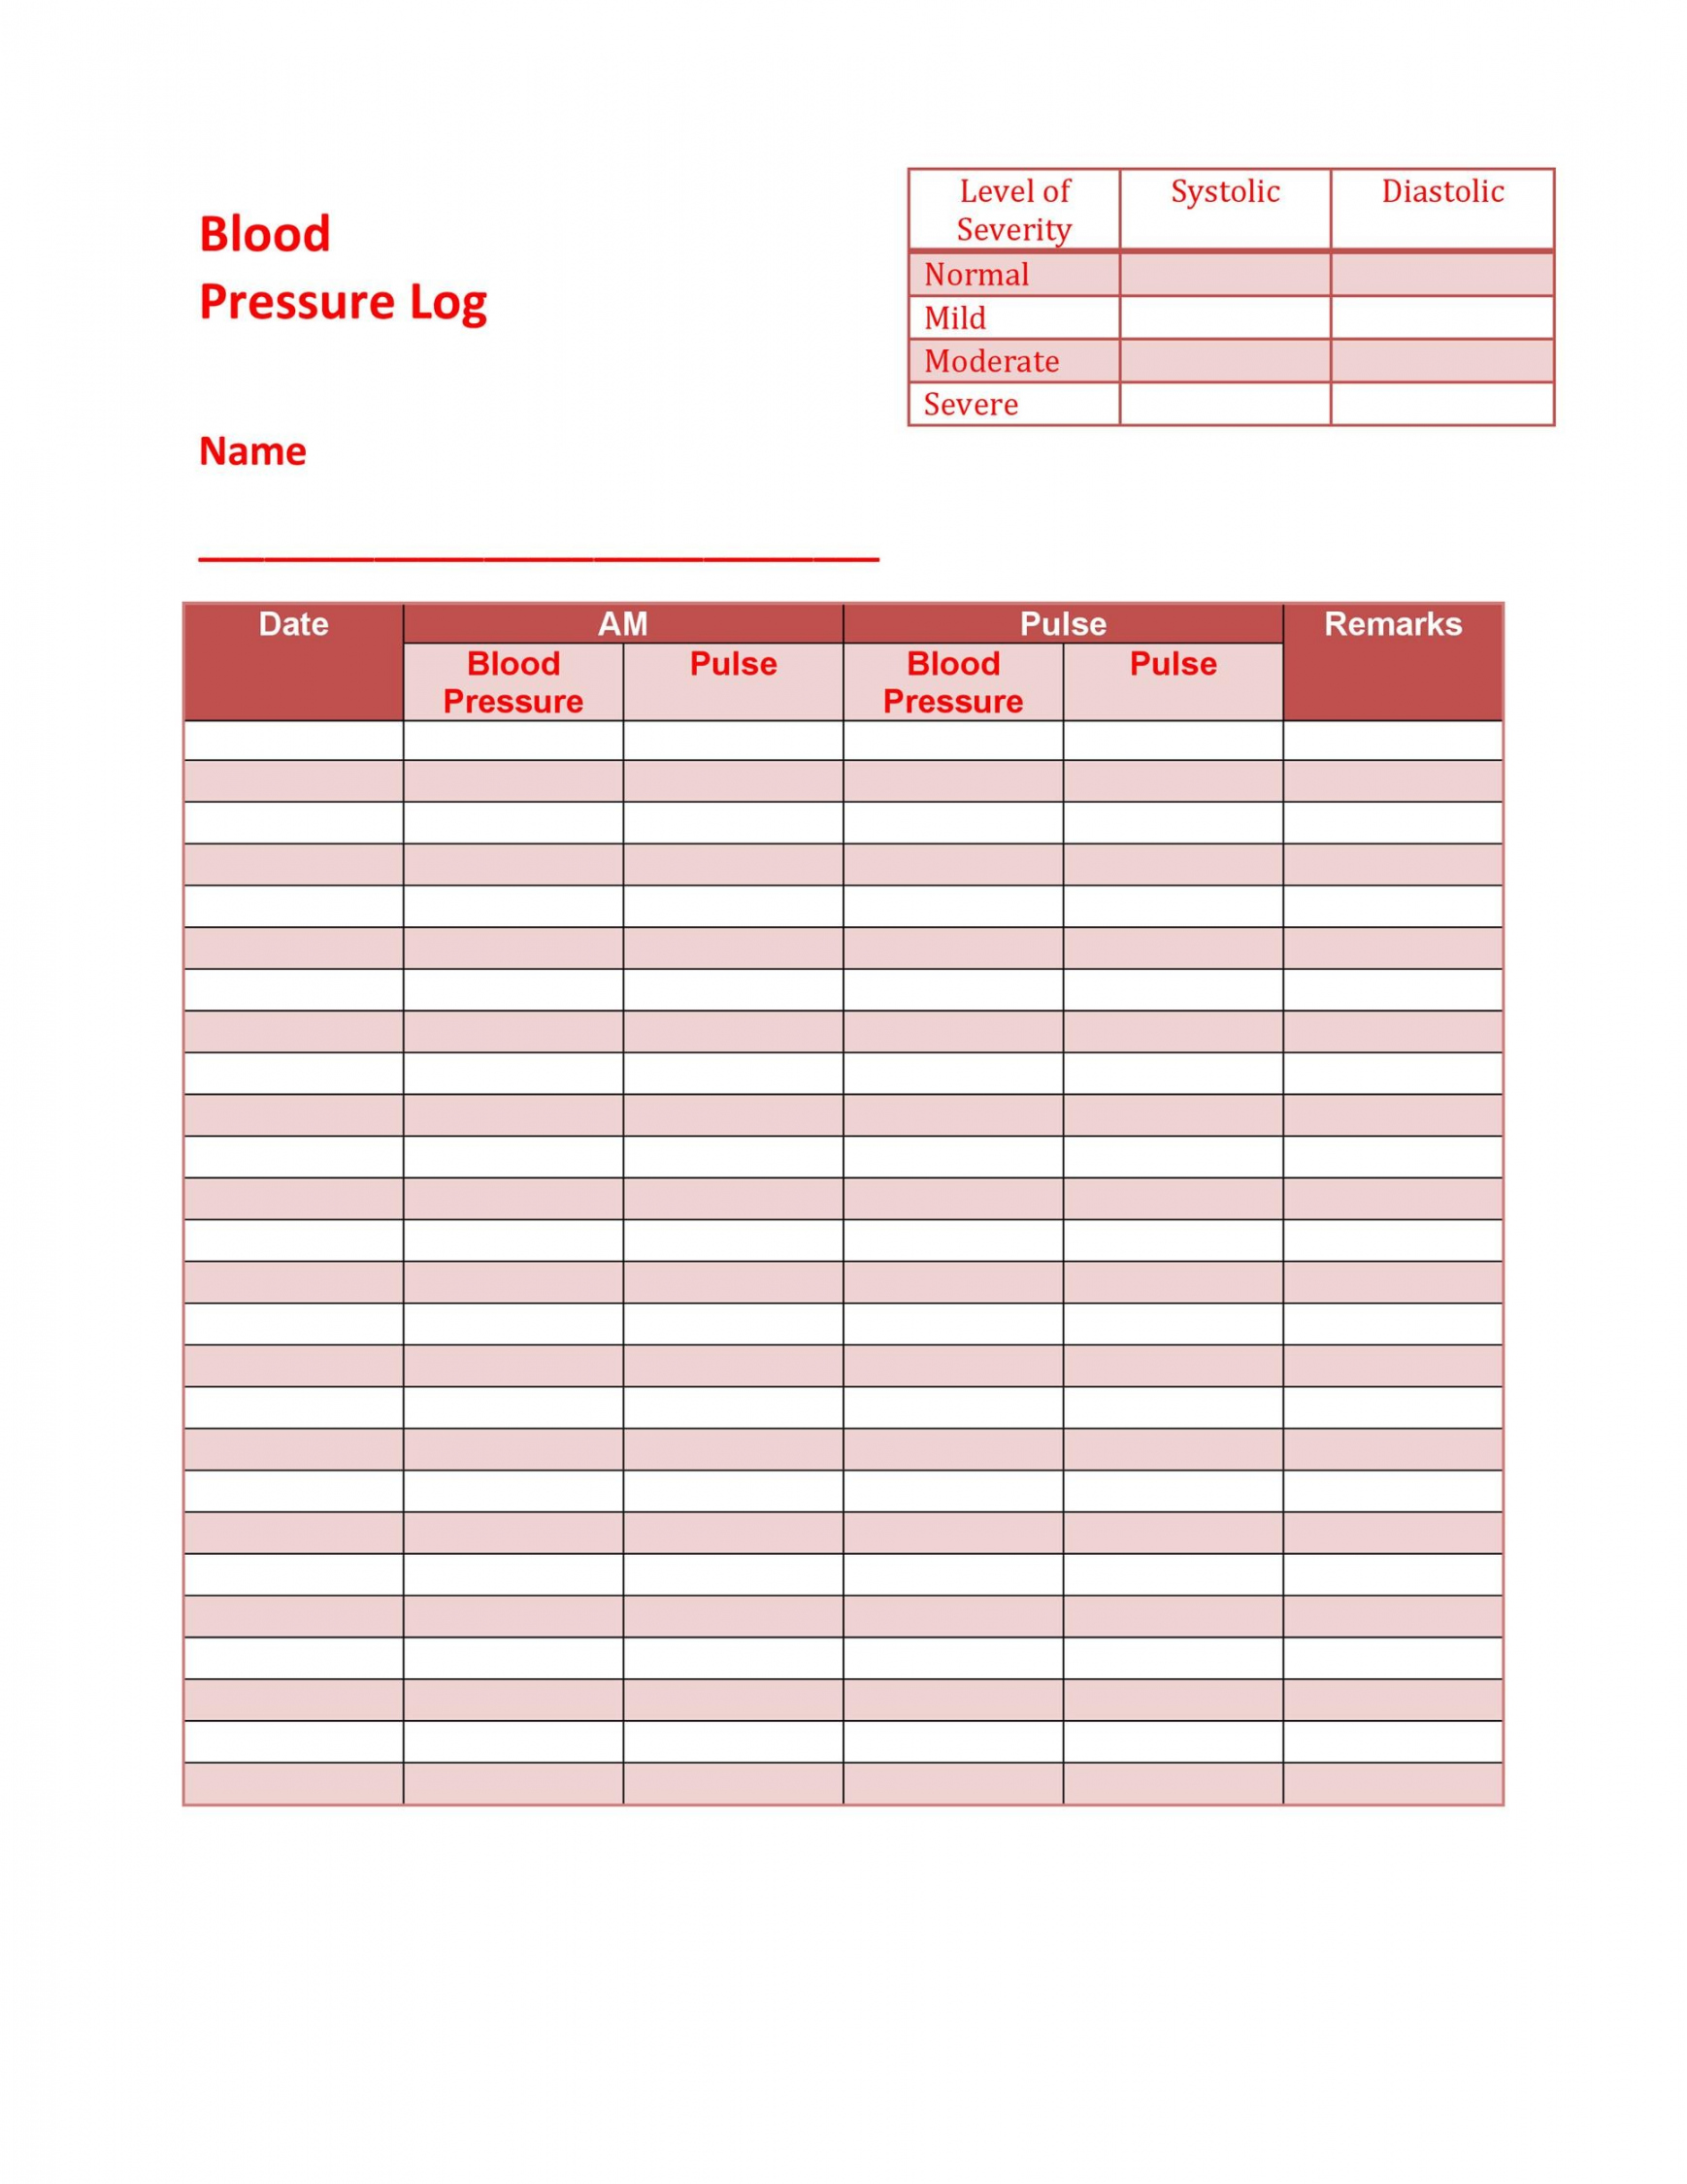 Blood Pressure Log Printable Free - Printable - + Printable Blood Pressure Log Templates ᐅ TemplateLab